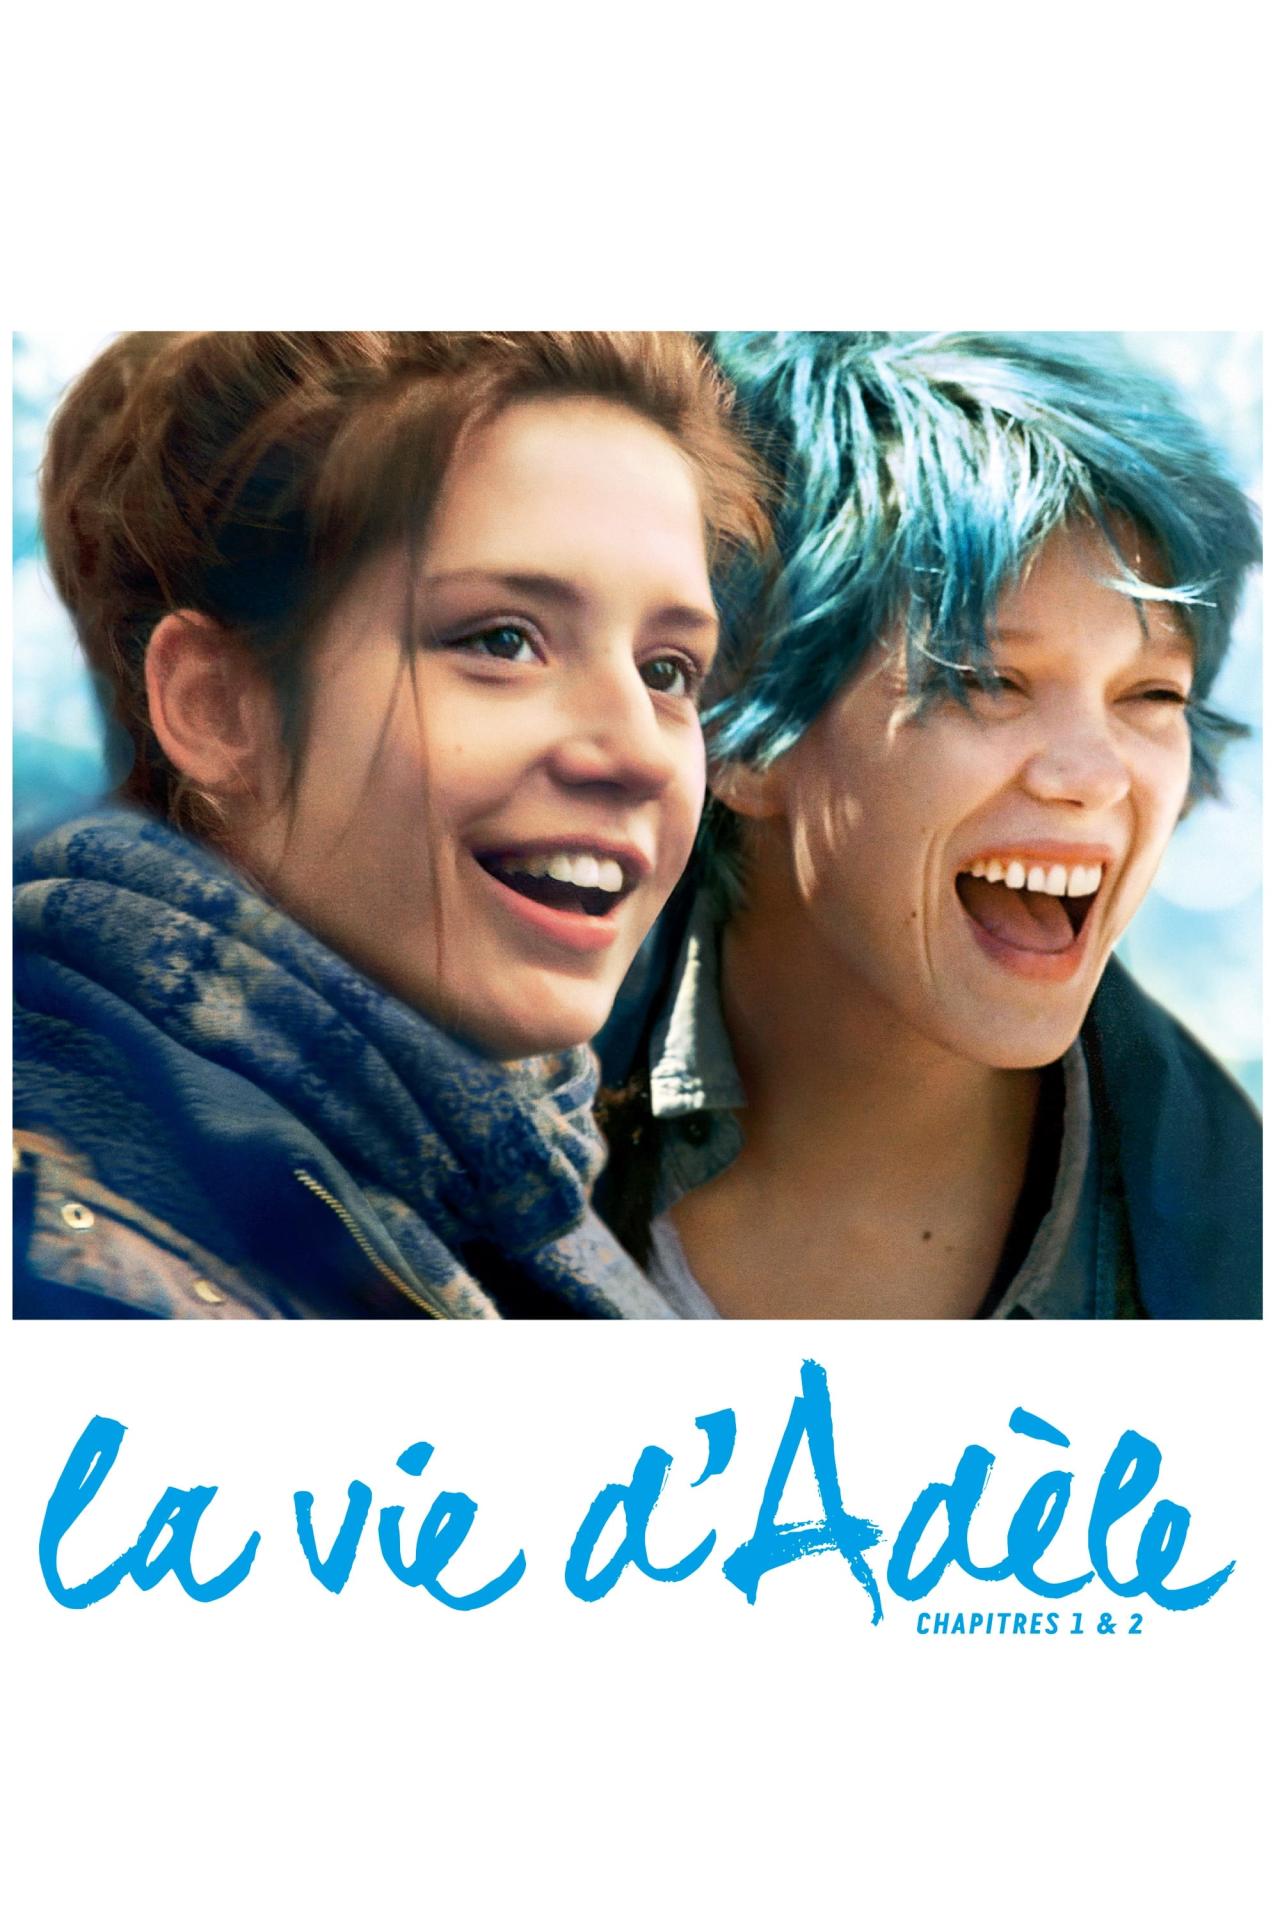 La Vie d'Adèle - Chapitres 1 et 2 est-il disponible sur Netflix ou autre ?